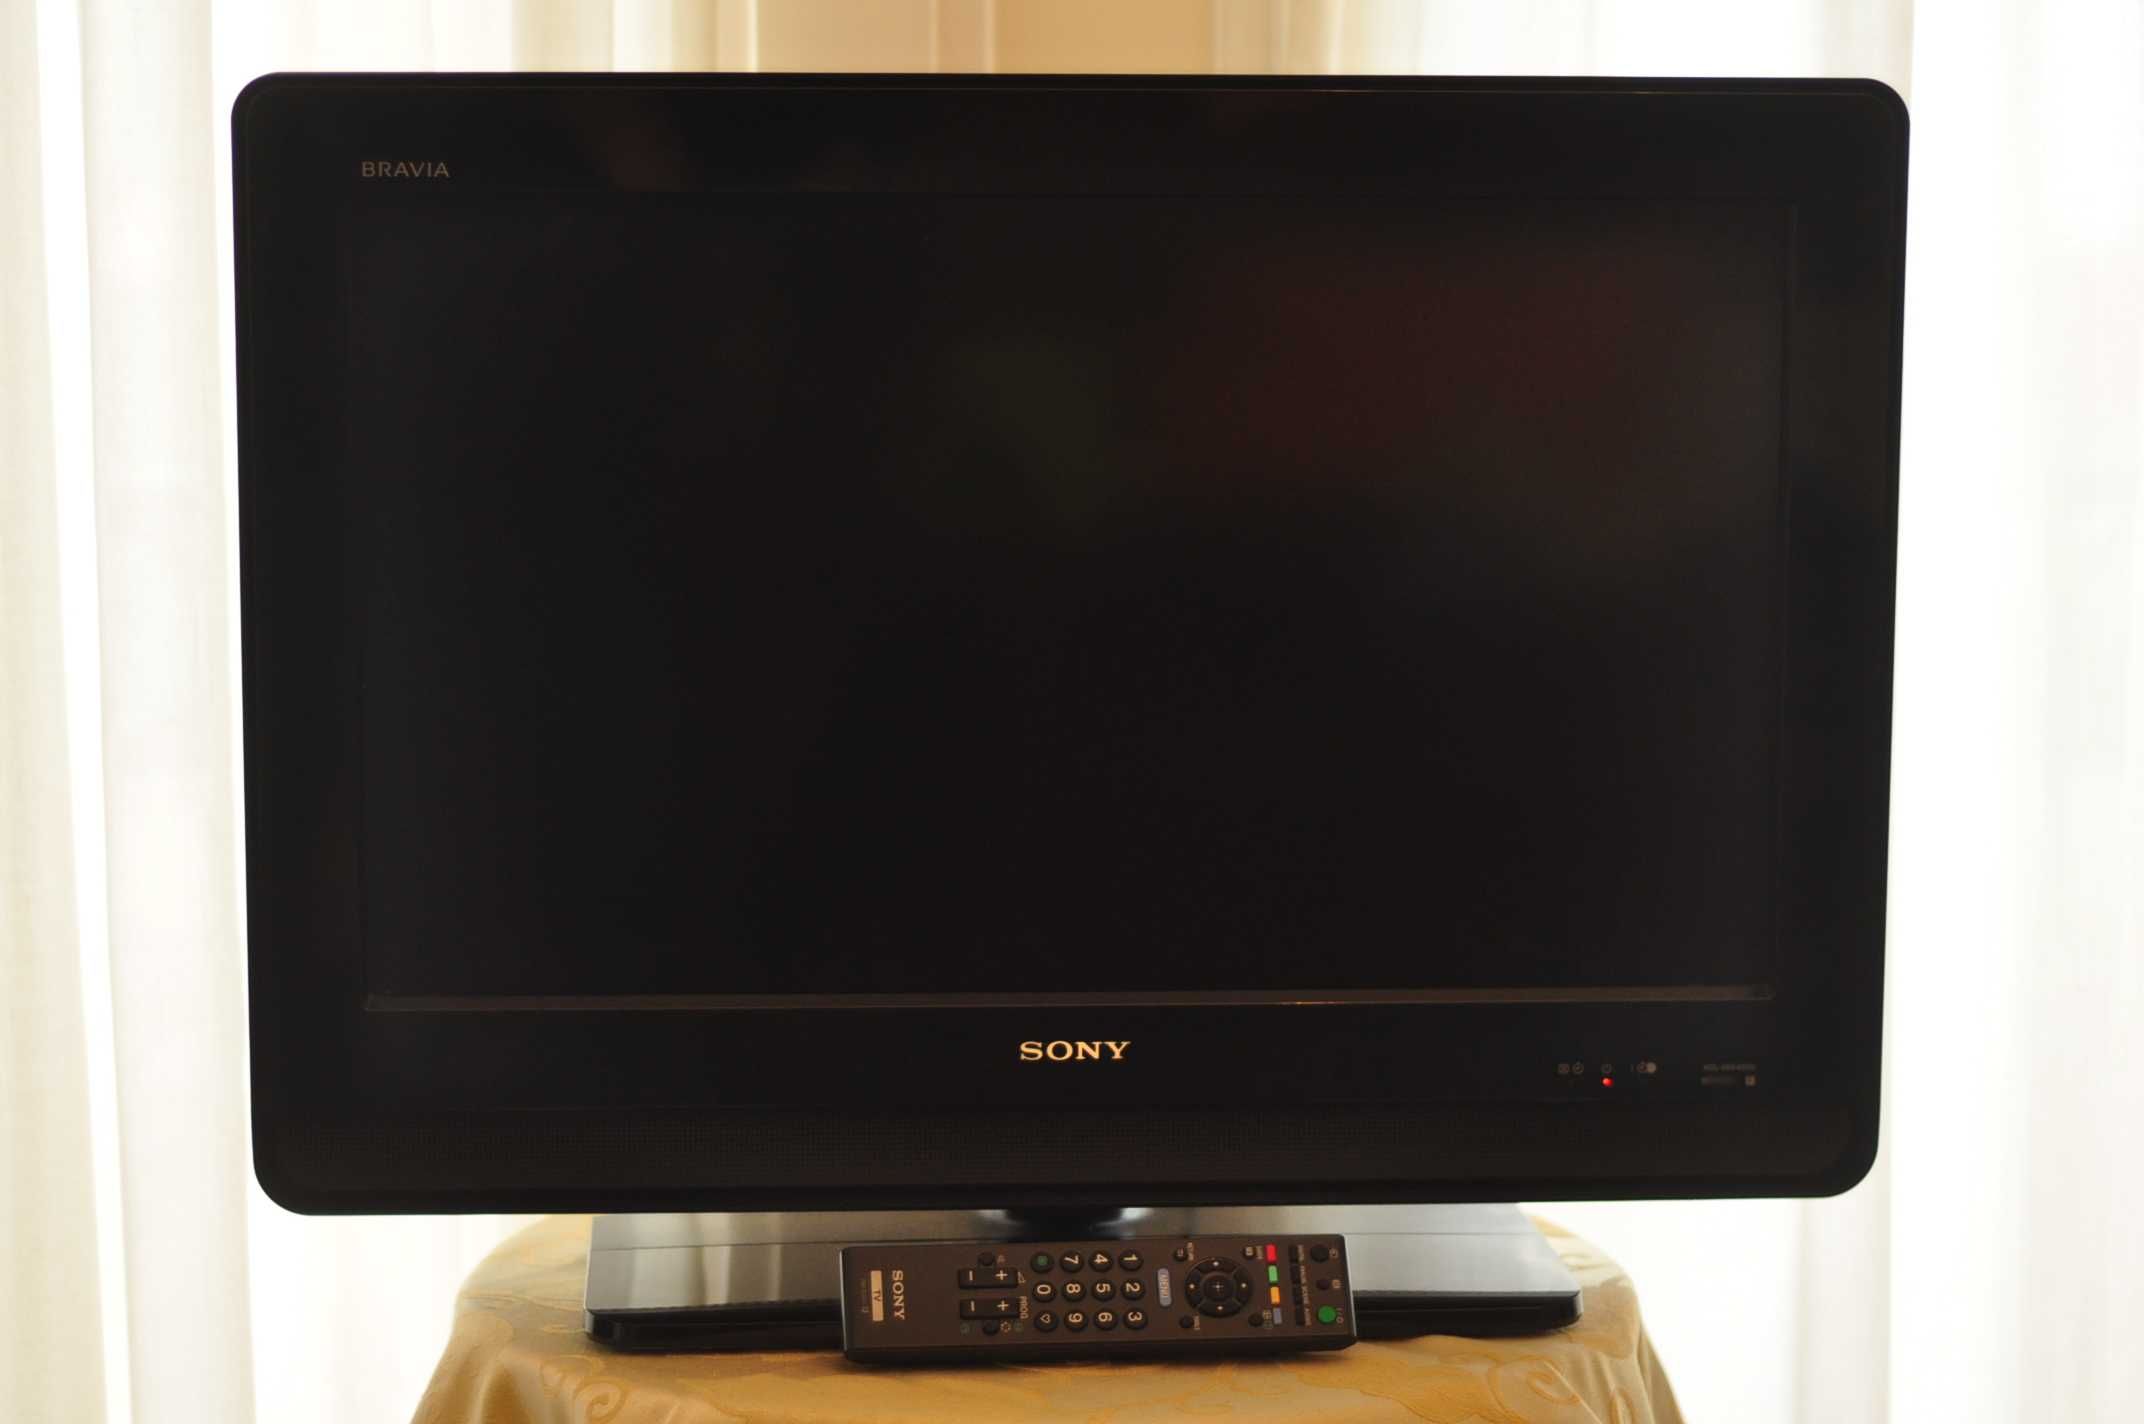 Tv Sony 26" Sony KDL 26S4000 com avaria para recuperação ou peças